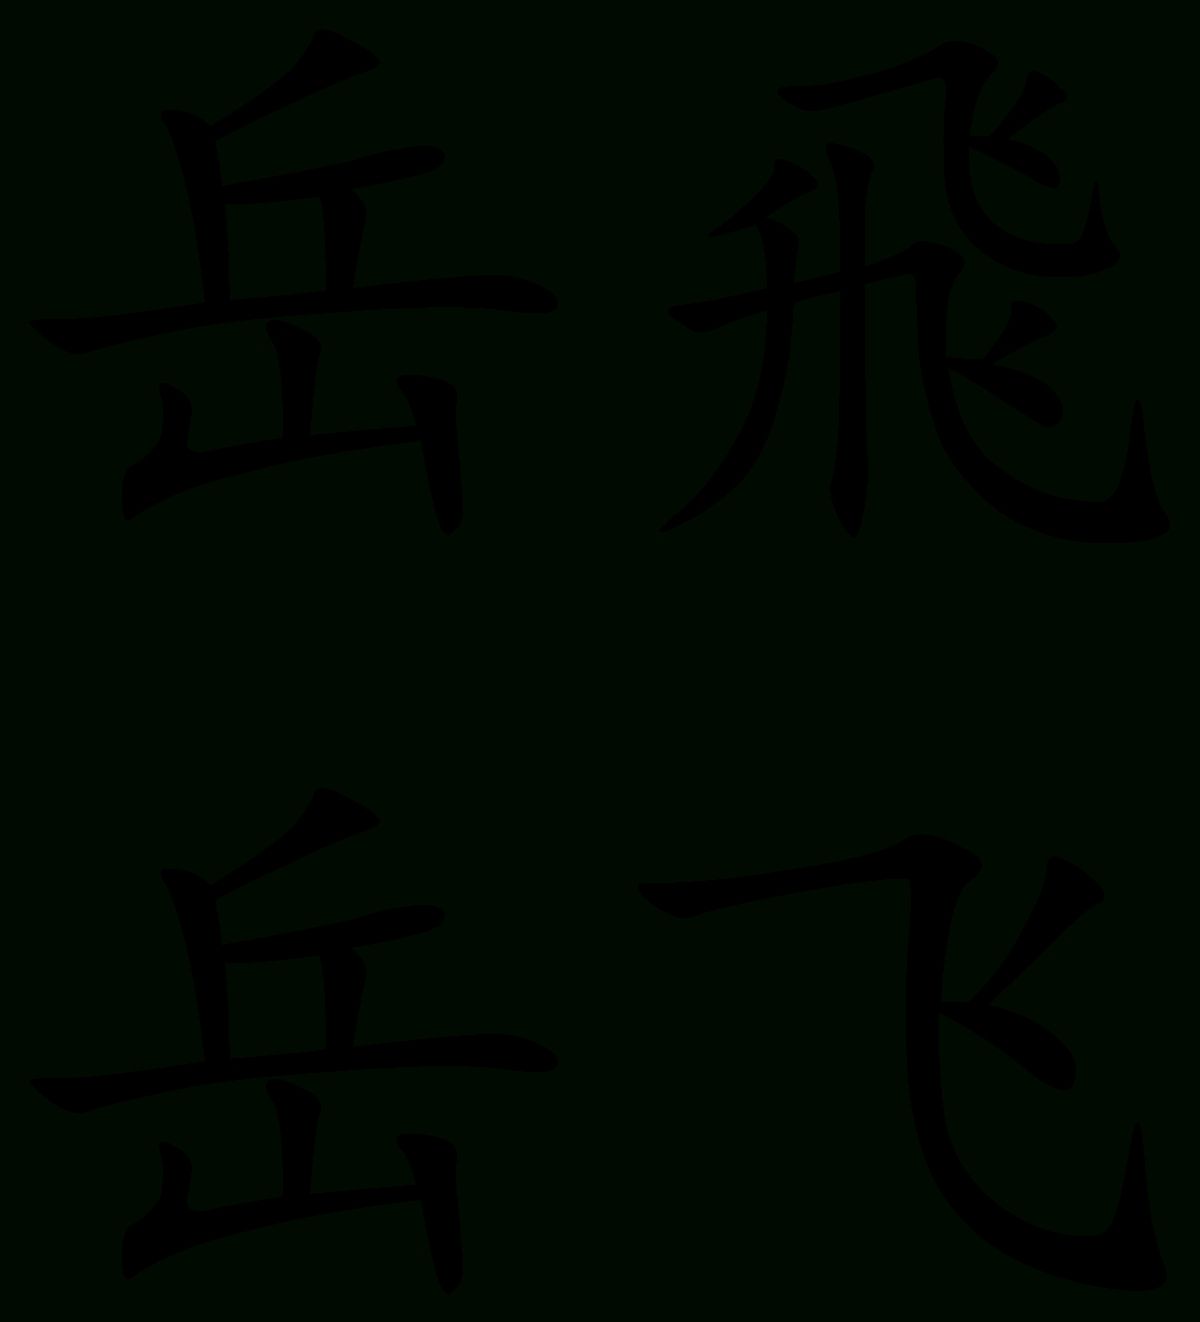 Yue Fei – Wikipedia Regarding 2018 Wo Ai Ni In Chinese Wall Art (View 6 of 25)